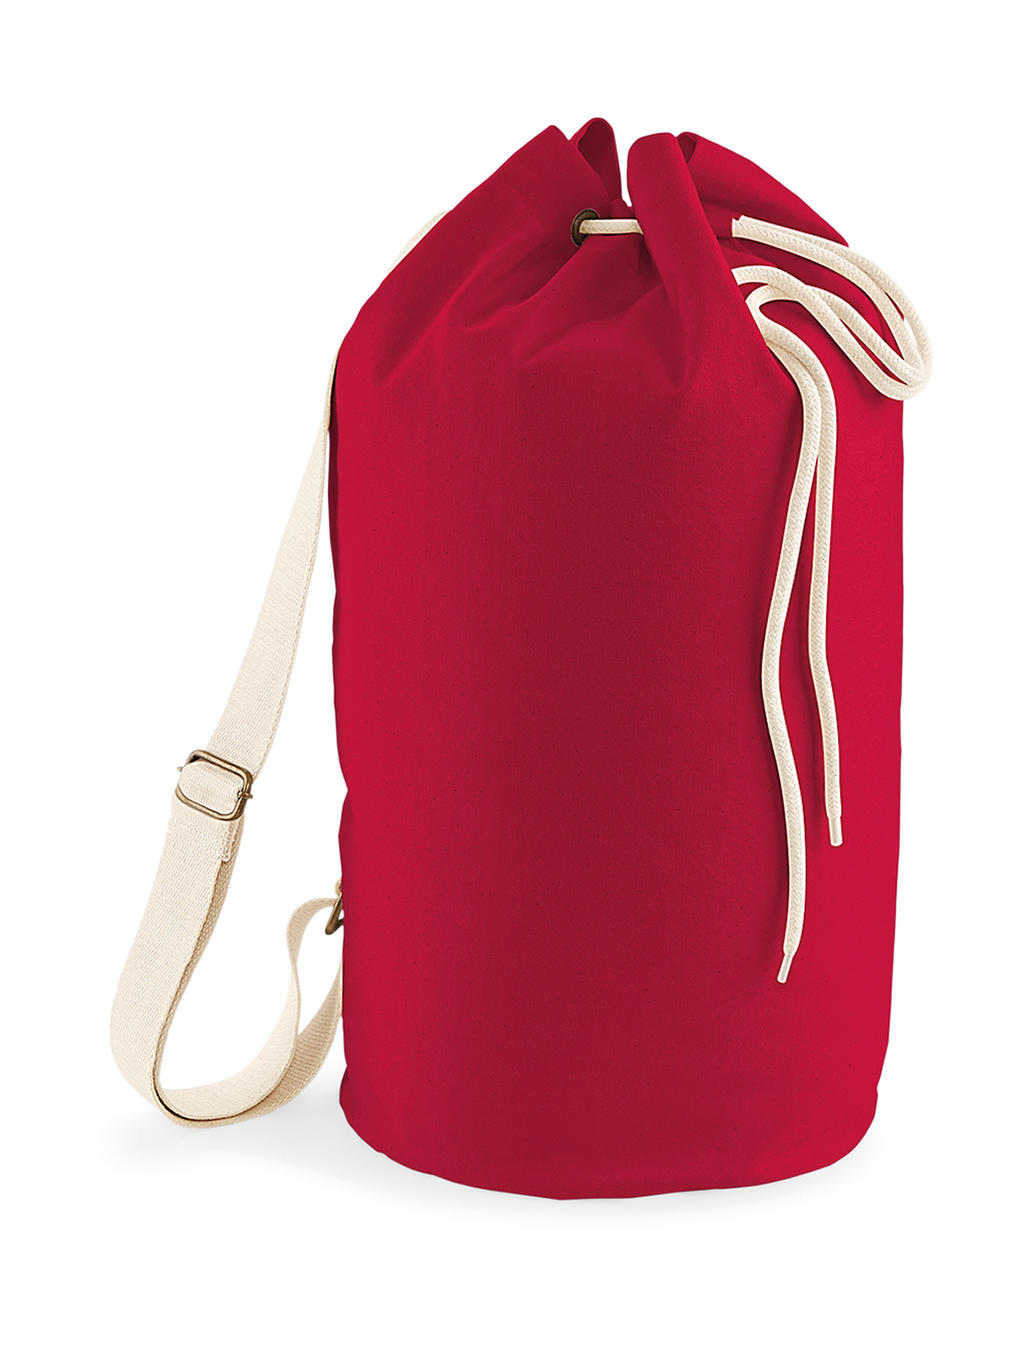  EarthAware? Organic Sea Bag in Farbe Classic Red